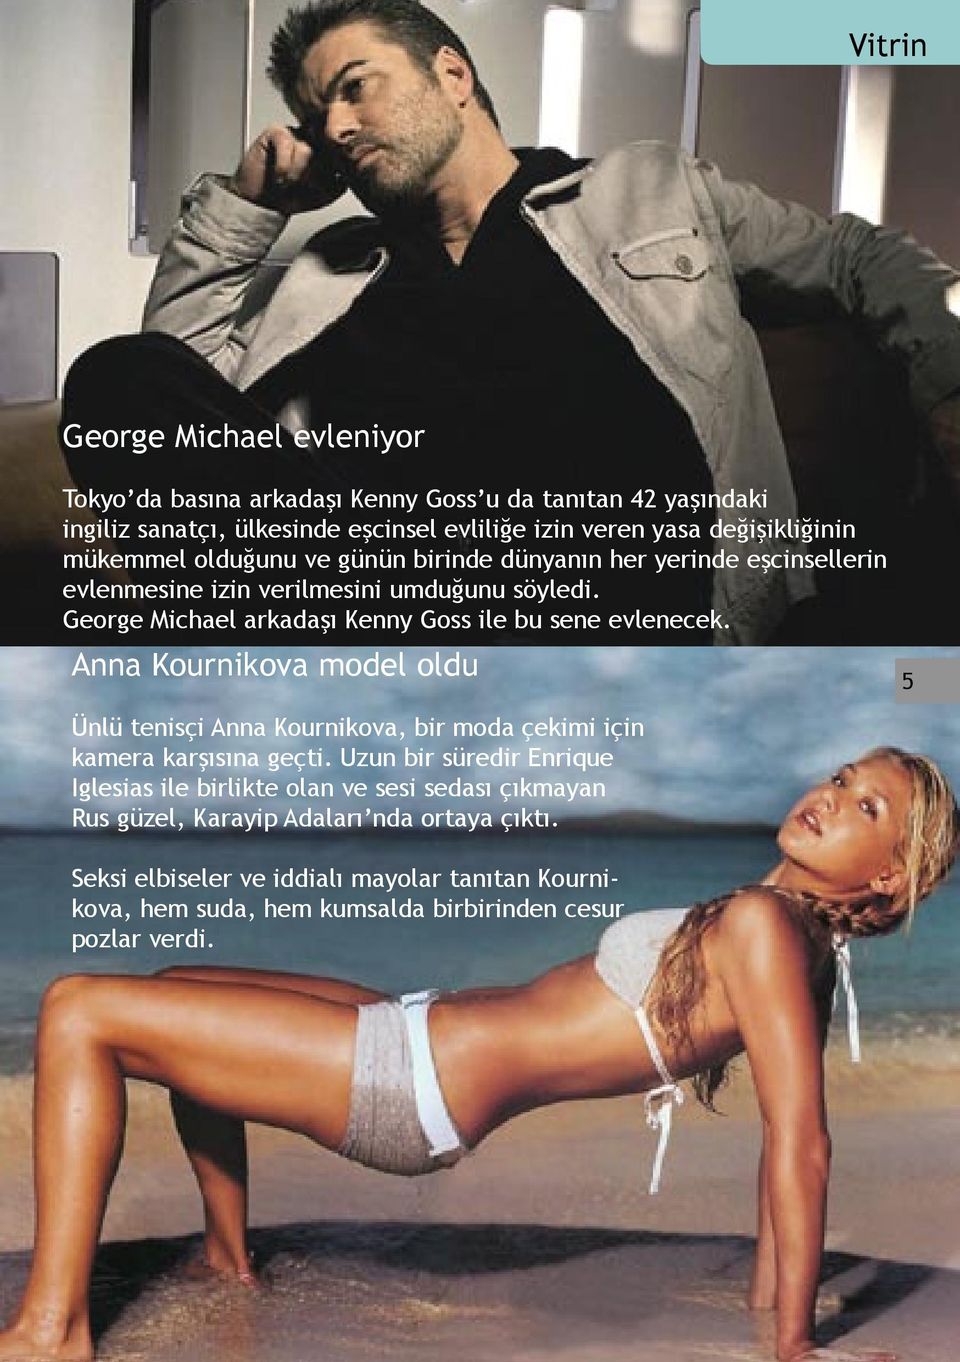 George Michael arkadaşı Kenny Goss ile bu sene evlenecek. Anna Kournikova model oldu Ünlü tenisçi Anna Kournikova, bir moda çekimi için kamera karşısına geçti.